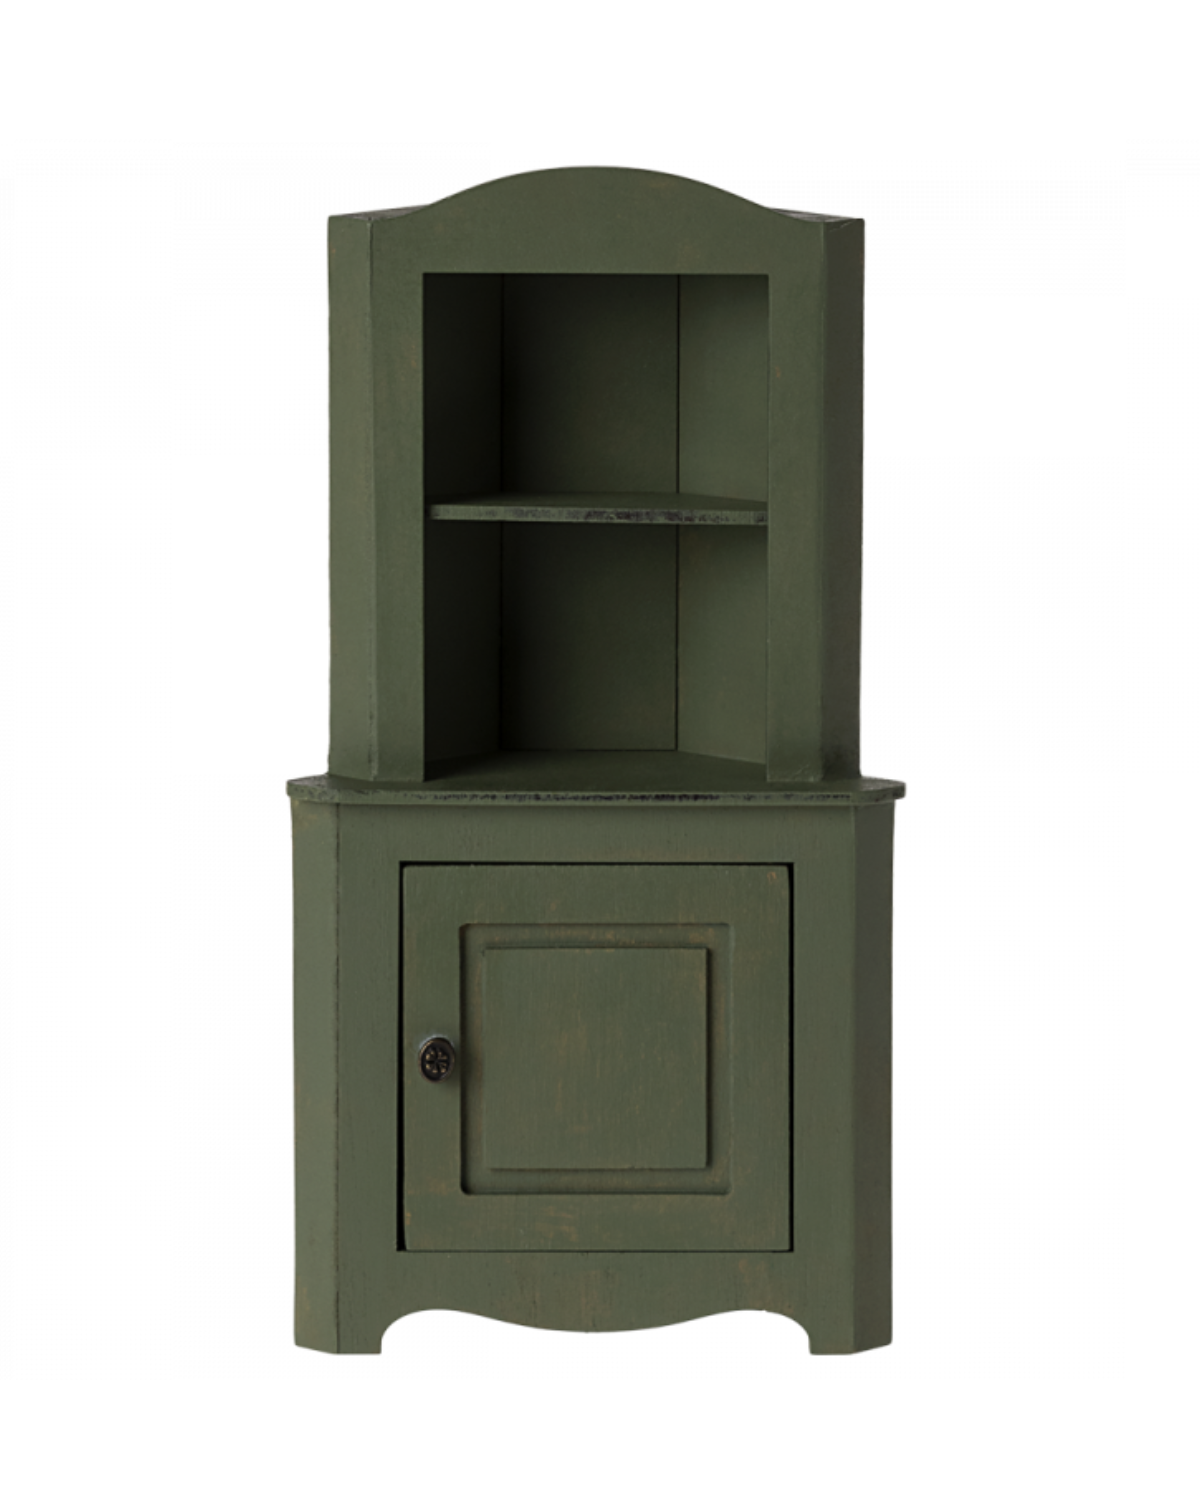 Maileg Miniature Corner Cabinet - Dark Green: Dollhouse Essential